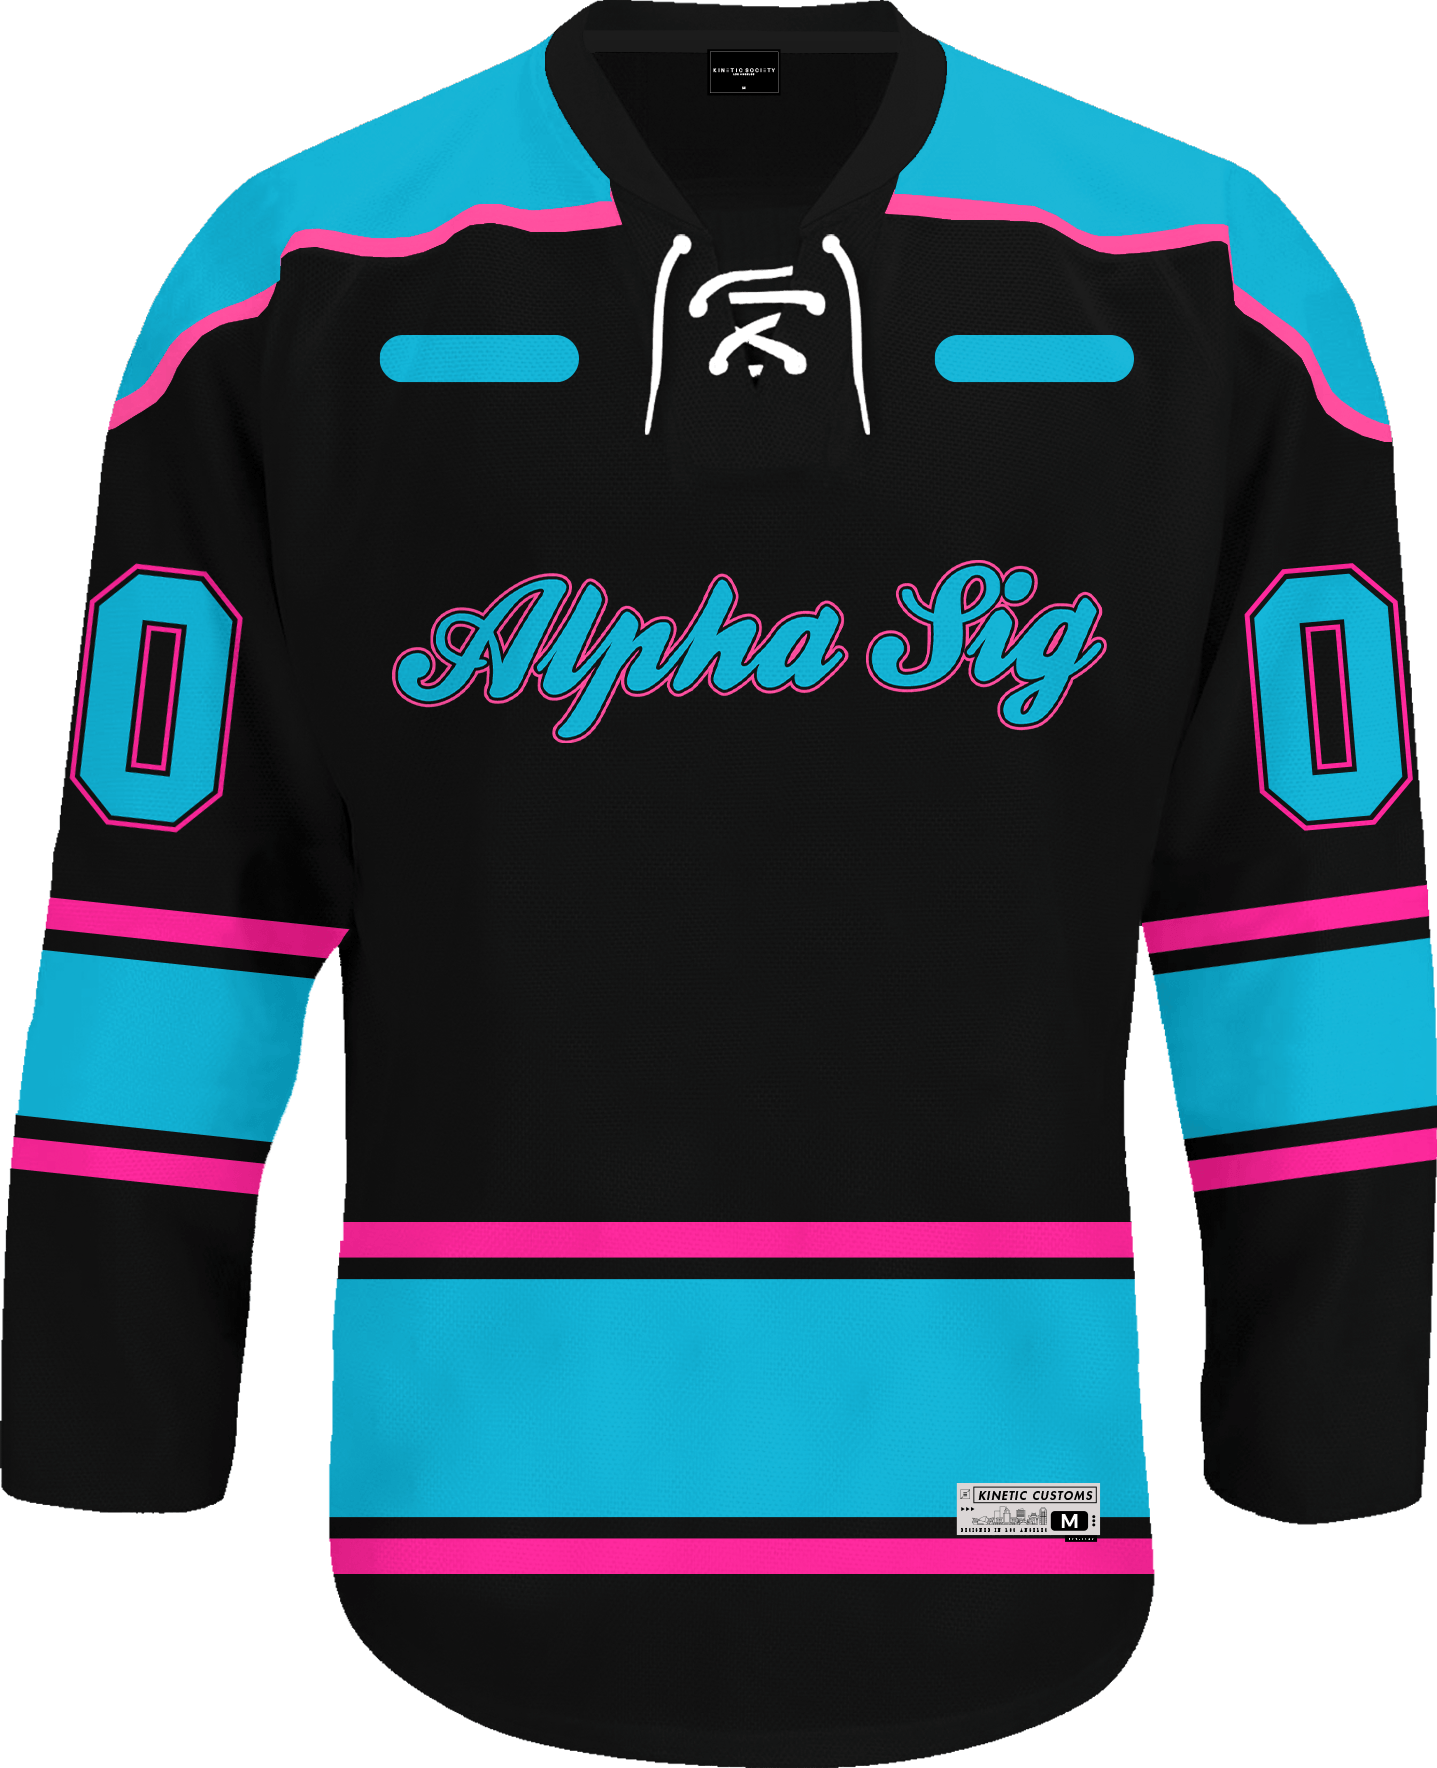 Kappa Delta Custom Hockey Jersey | Style 37 2XL